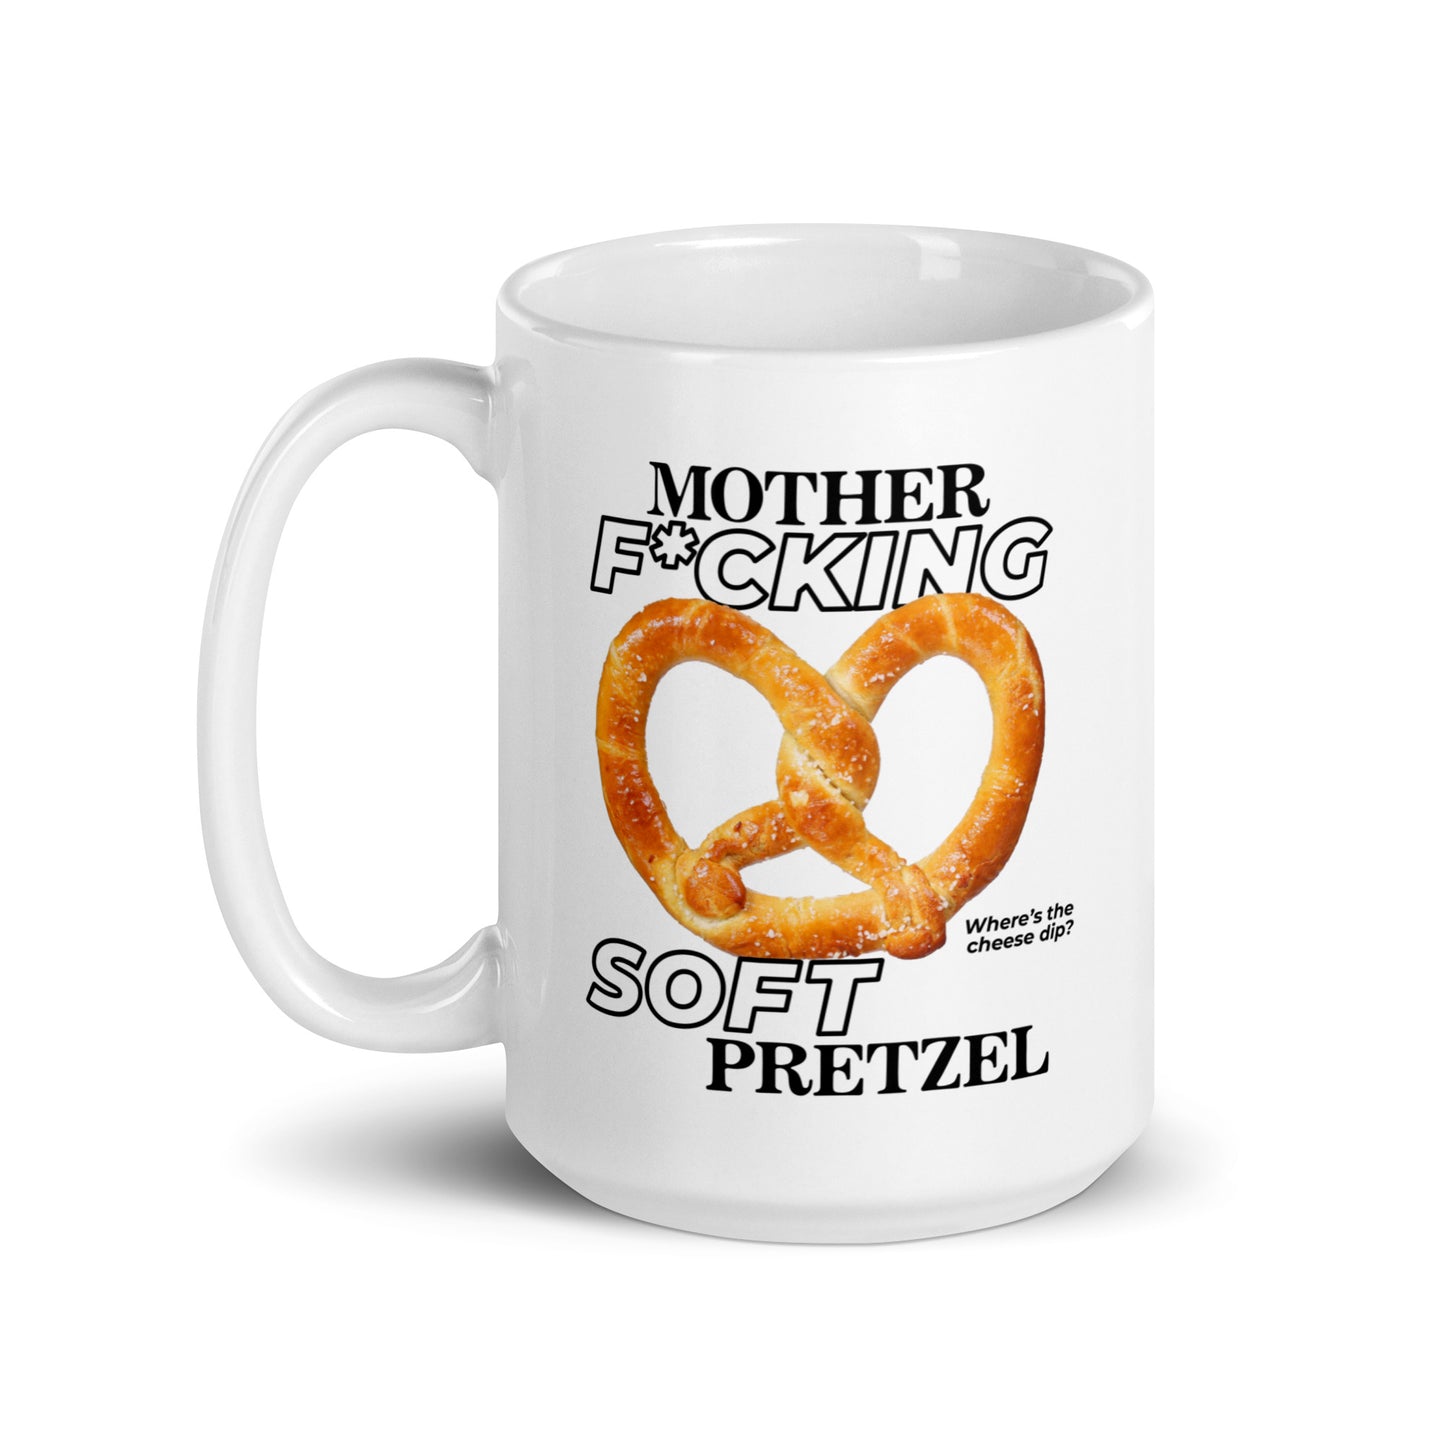 Mother F*cking Soft Pretzel mug